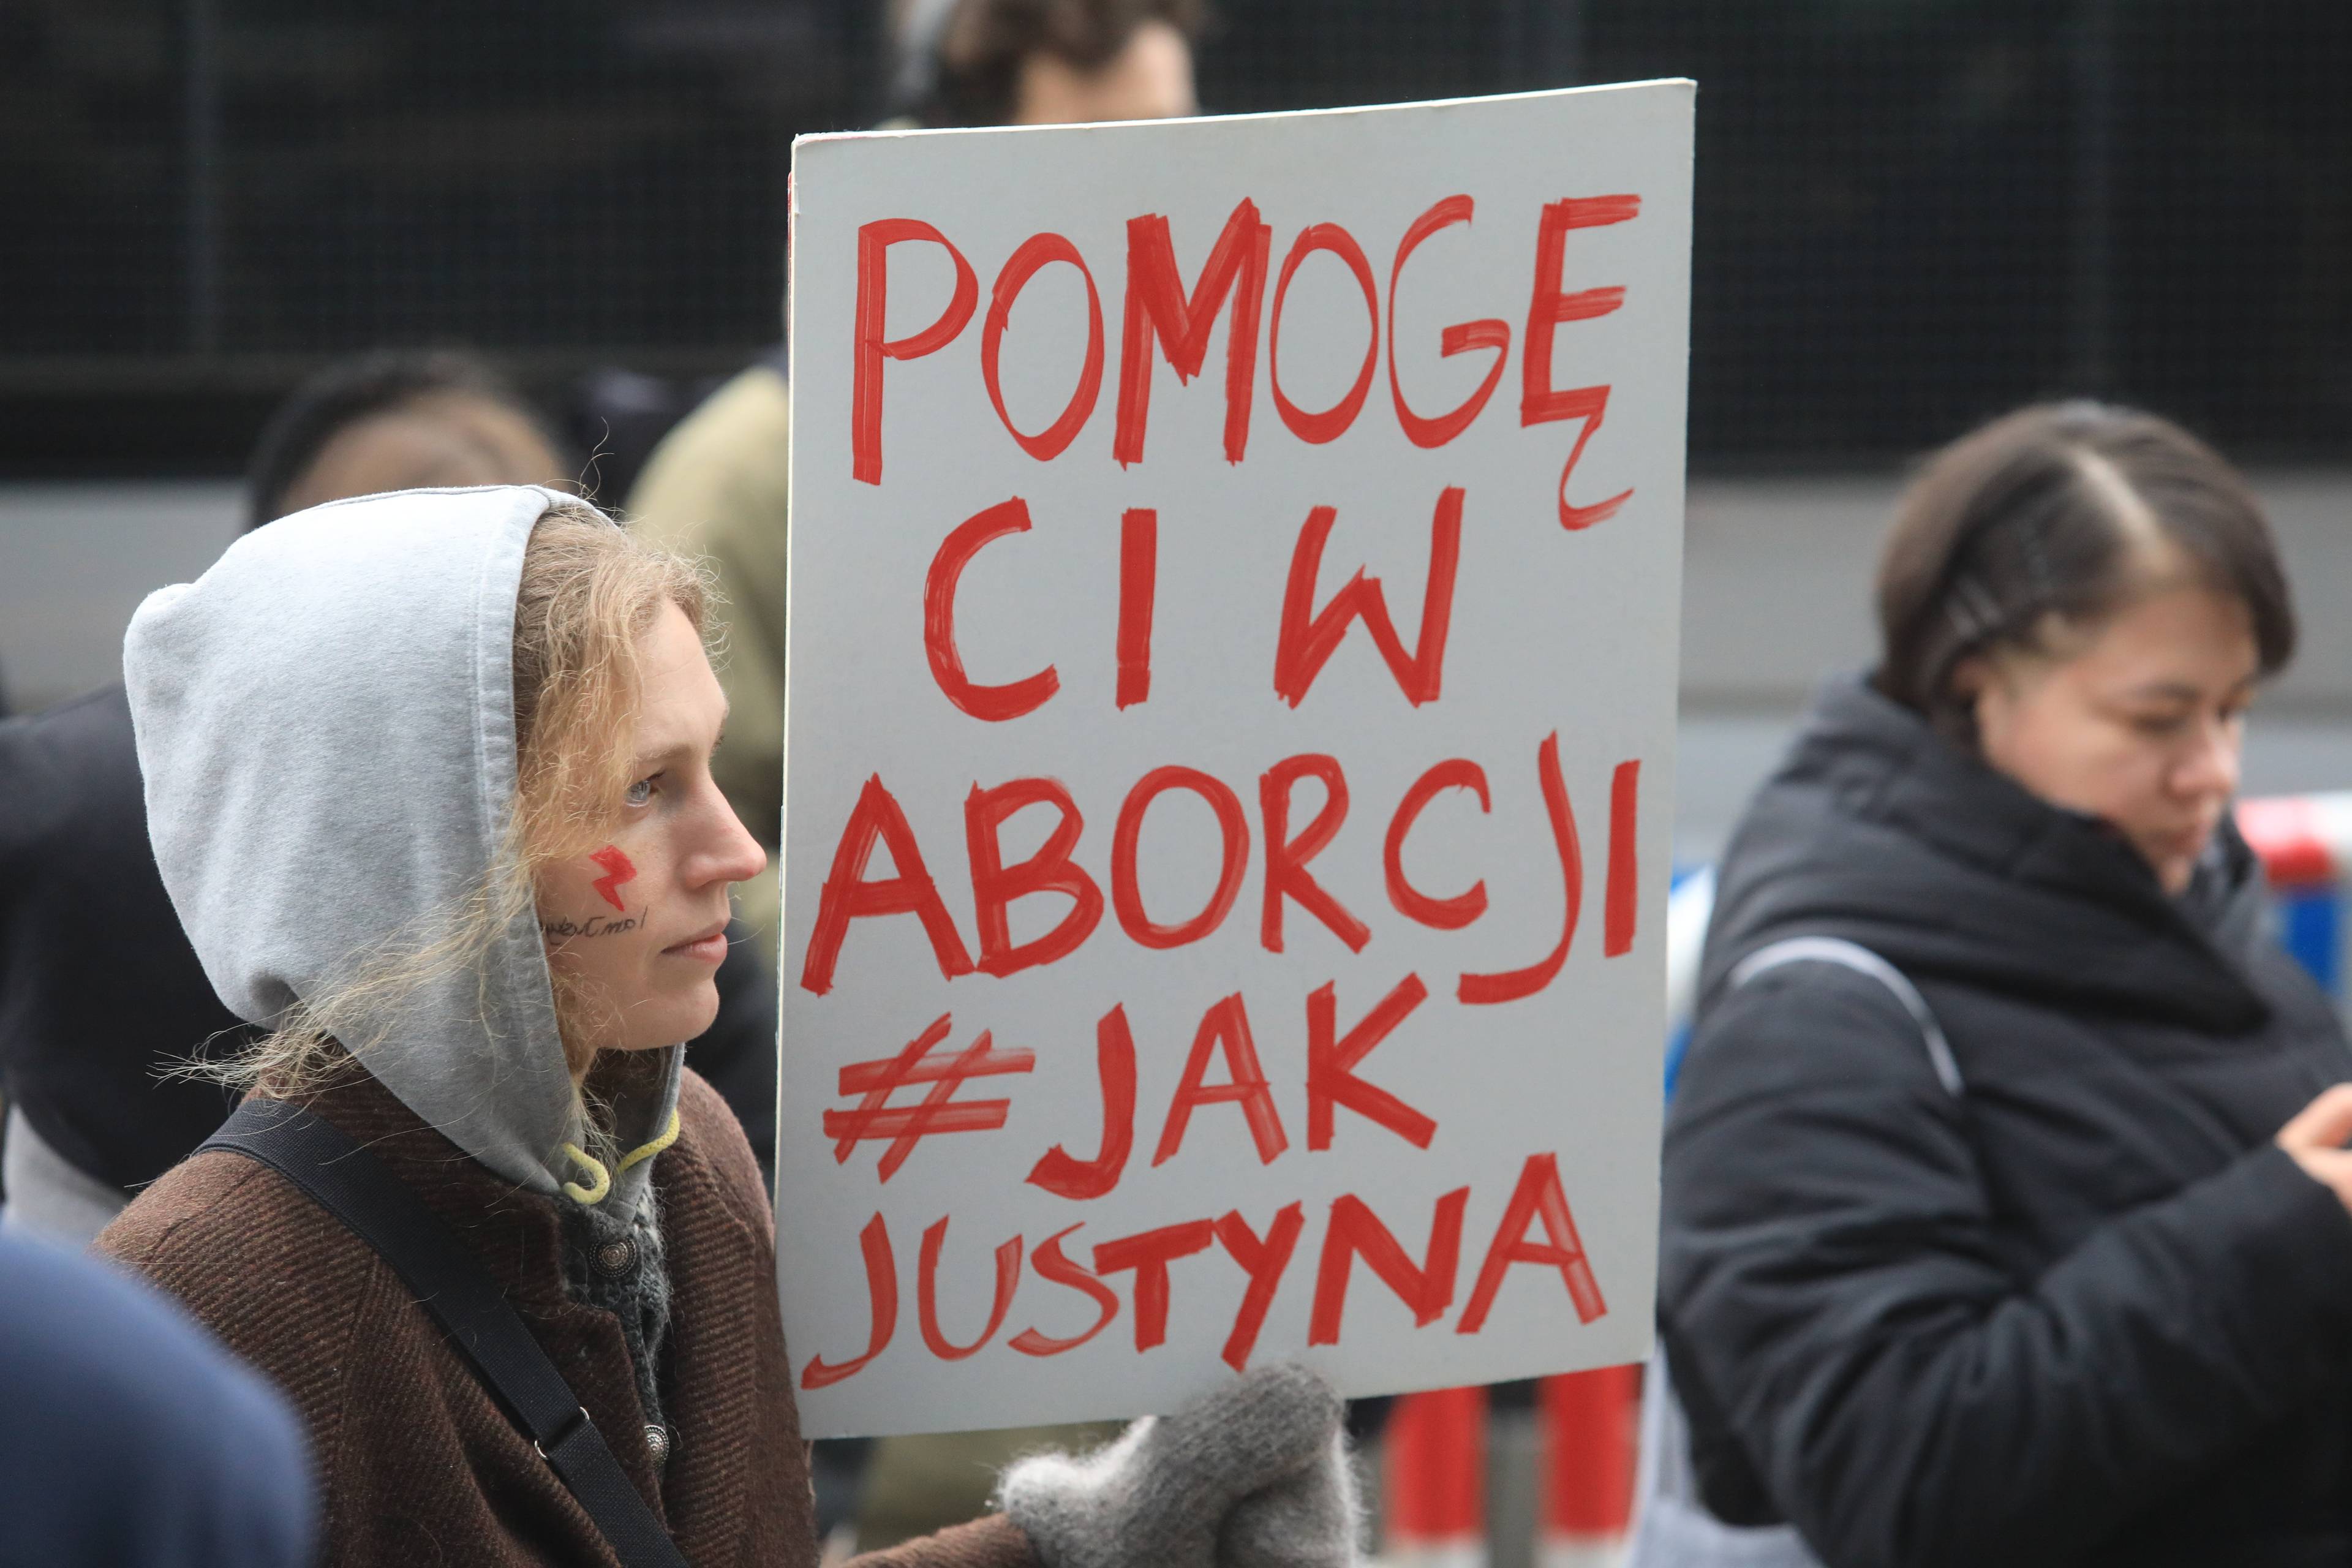 Uczestniczka protestu trzyma plakat z hasłem Pomogę ci w aborcji #JakJustyna